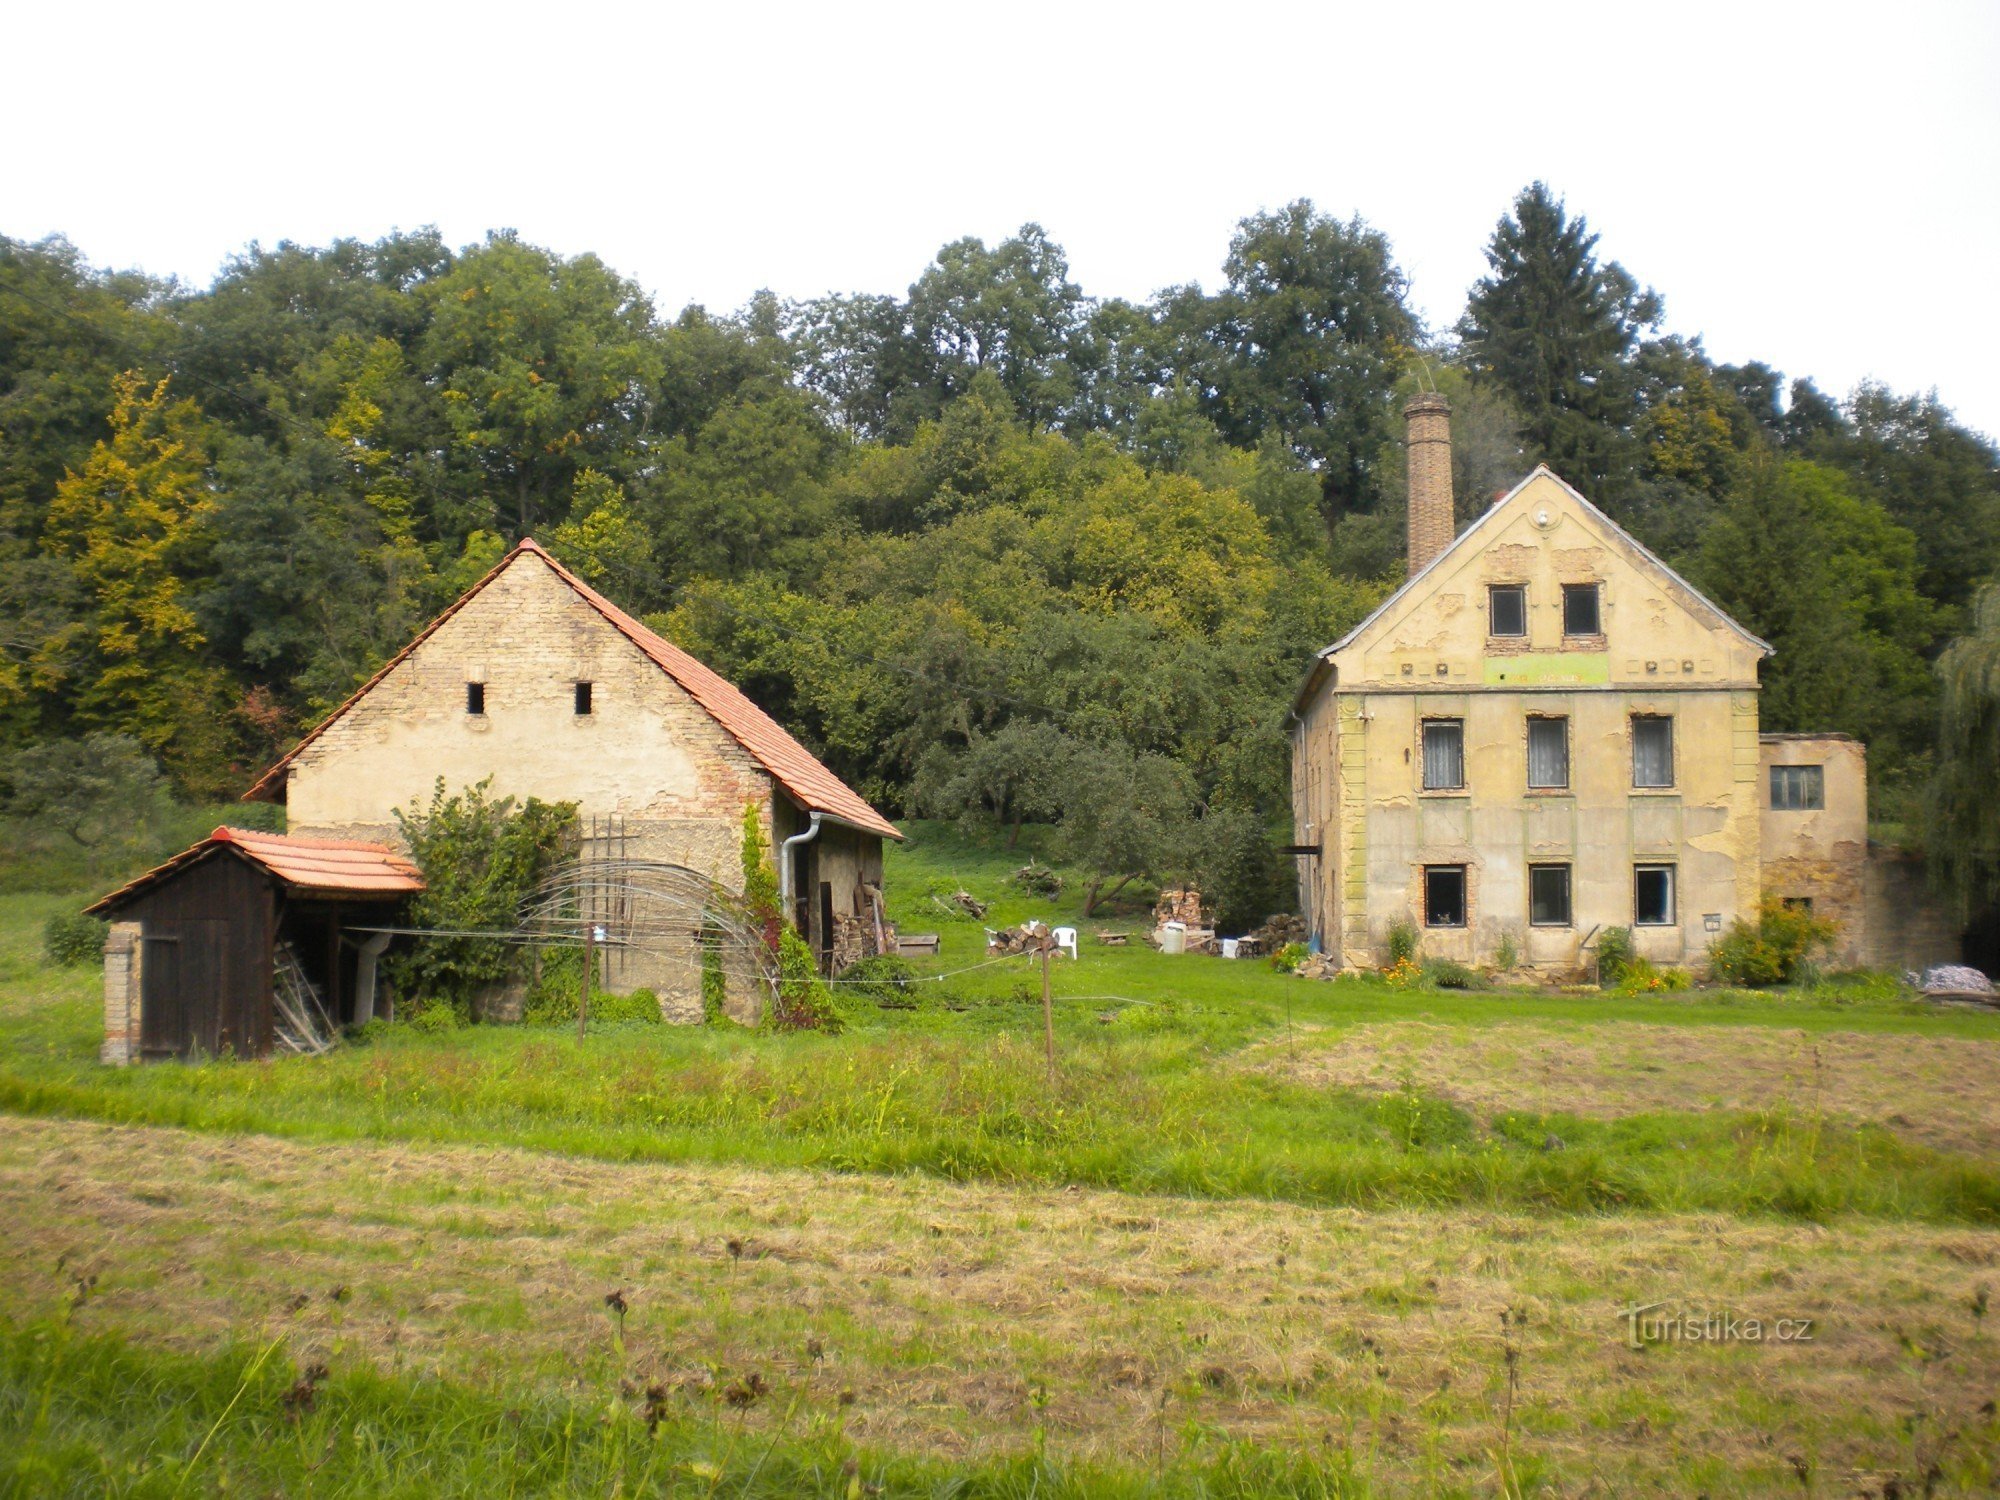 Un des moulins d'Opárenské údolí.